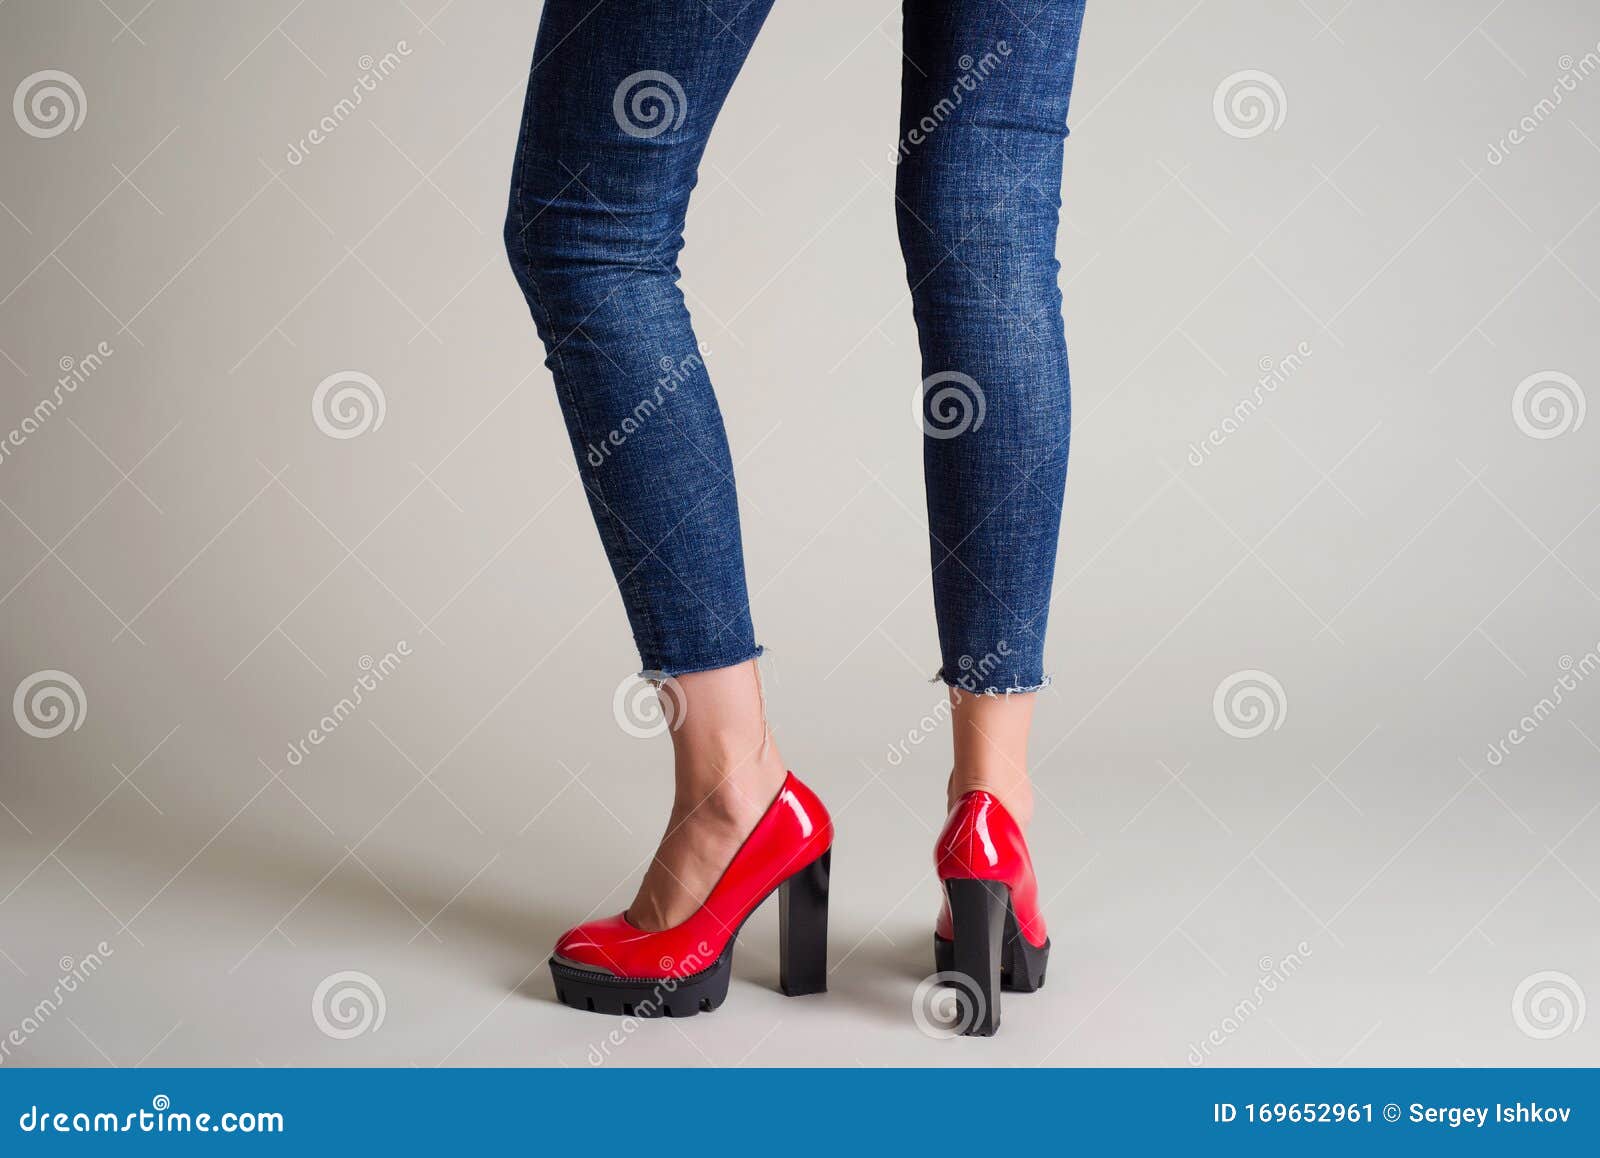 Mujer En Zapatos Rojos Con Tacones Negros Posando Un Fondo Gris Imagen de archivo - Imagen de pantalones, zapato: 169652961